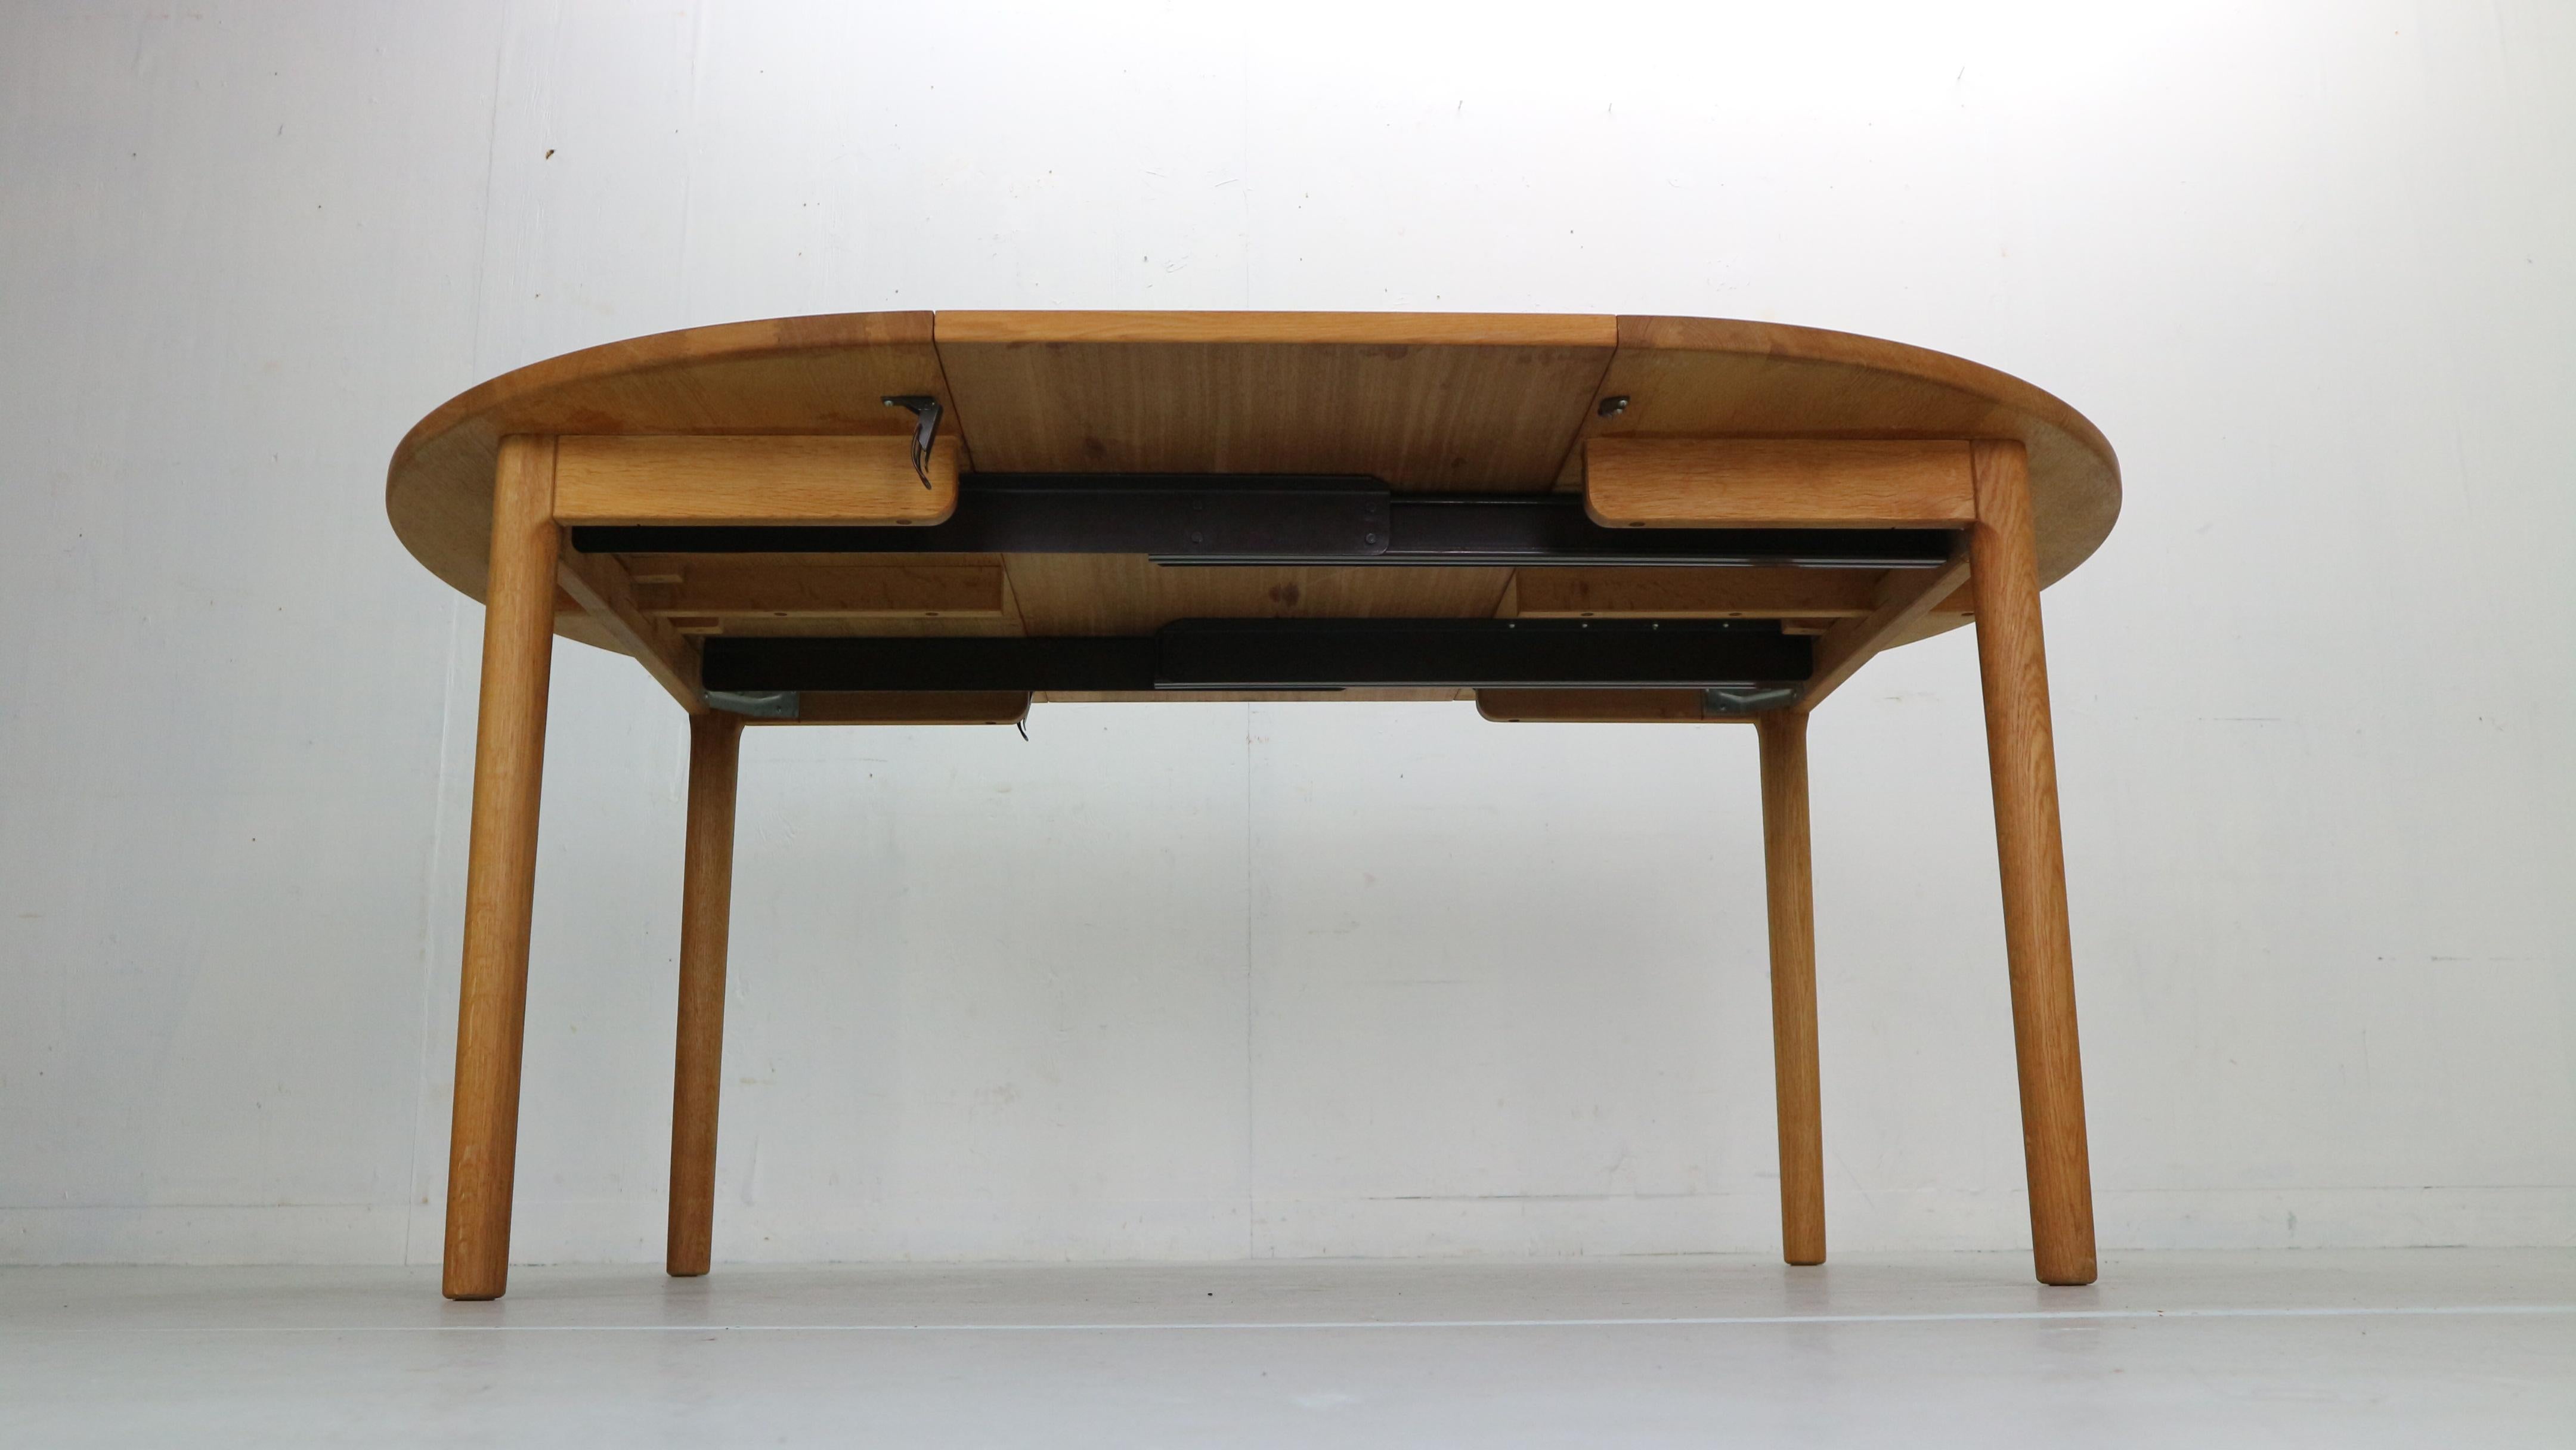 Danish Hans J. Wegner Round Oak Extendable Dining Table for RY Mobler, Denmark 1970